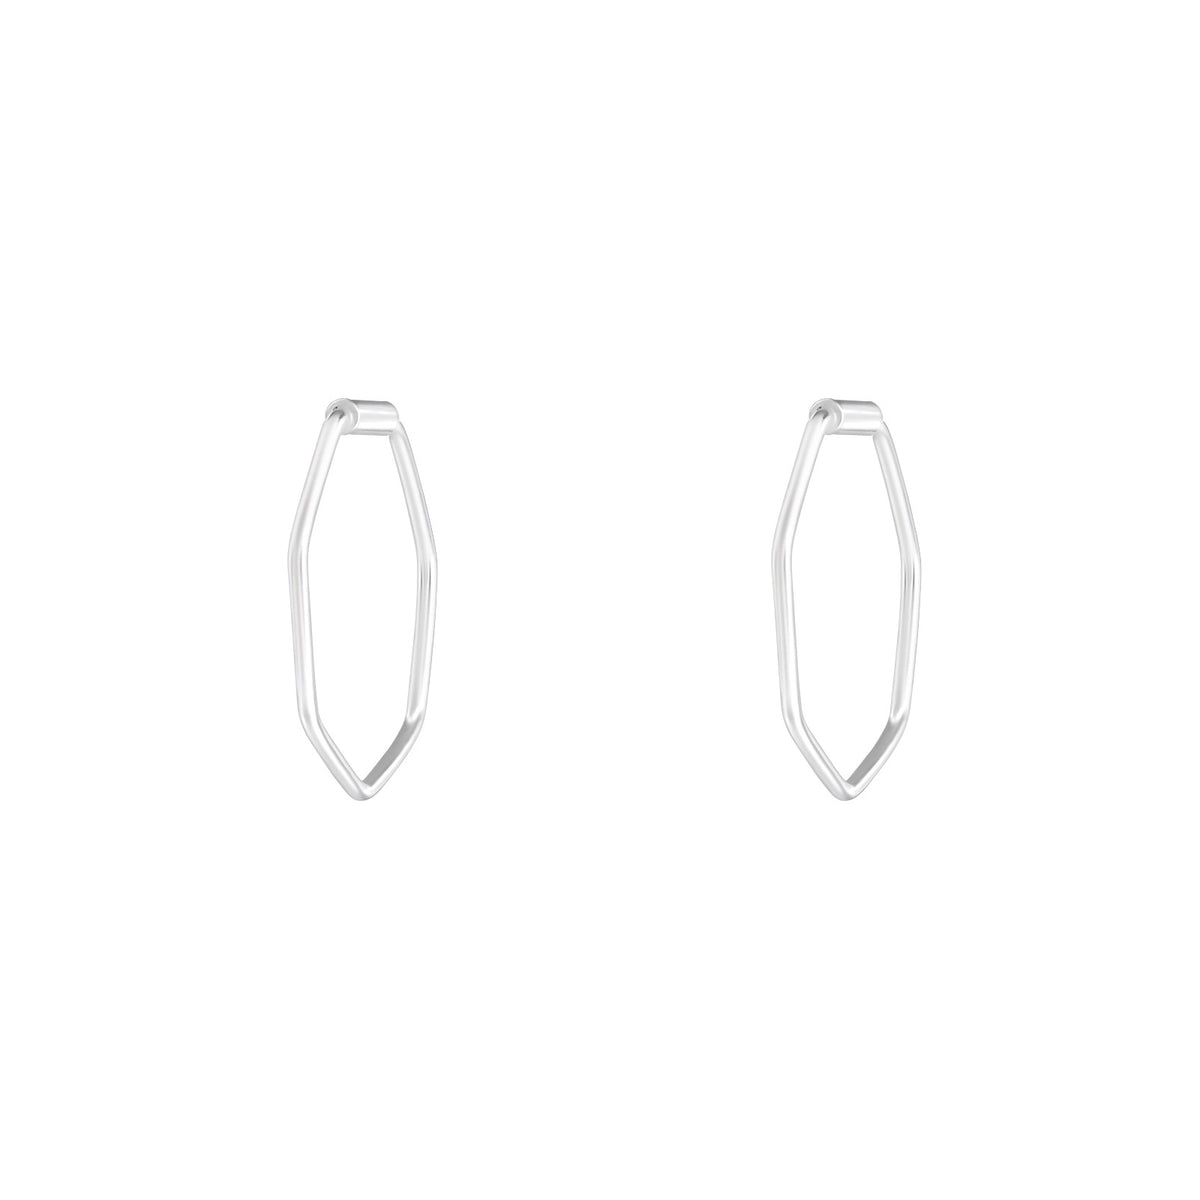 Geometric 925 silver earrings